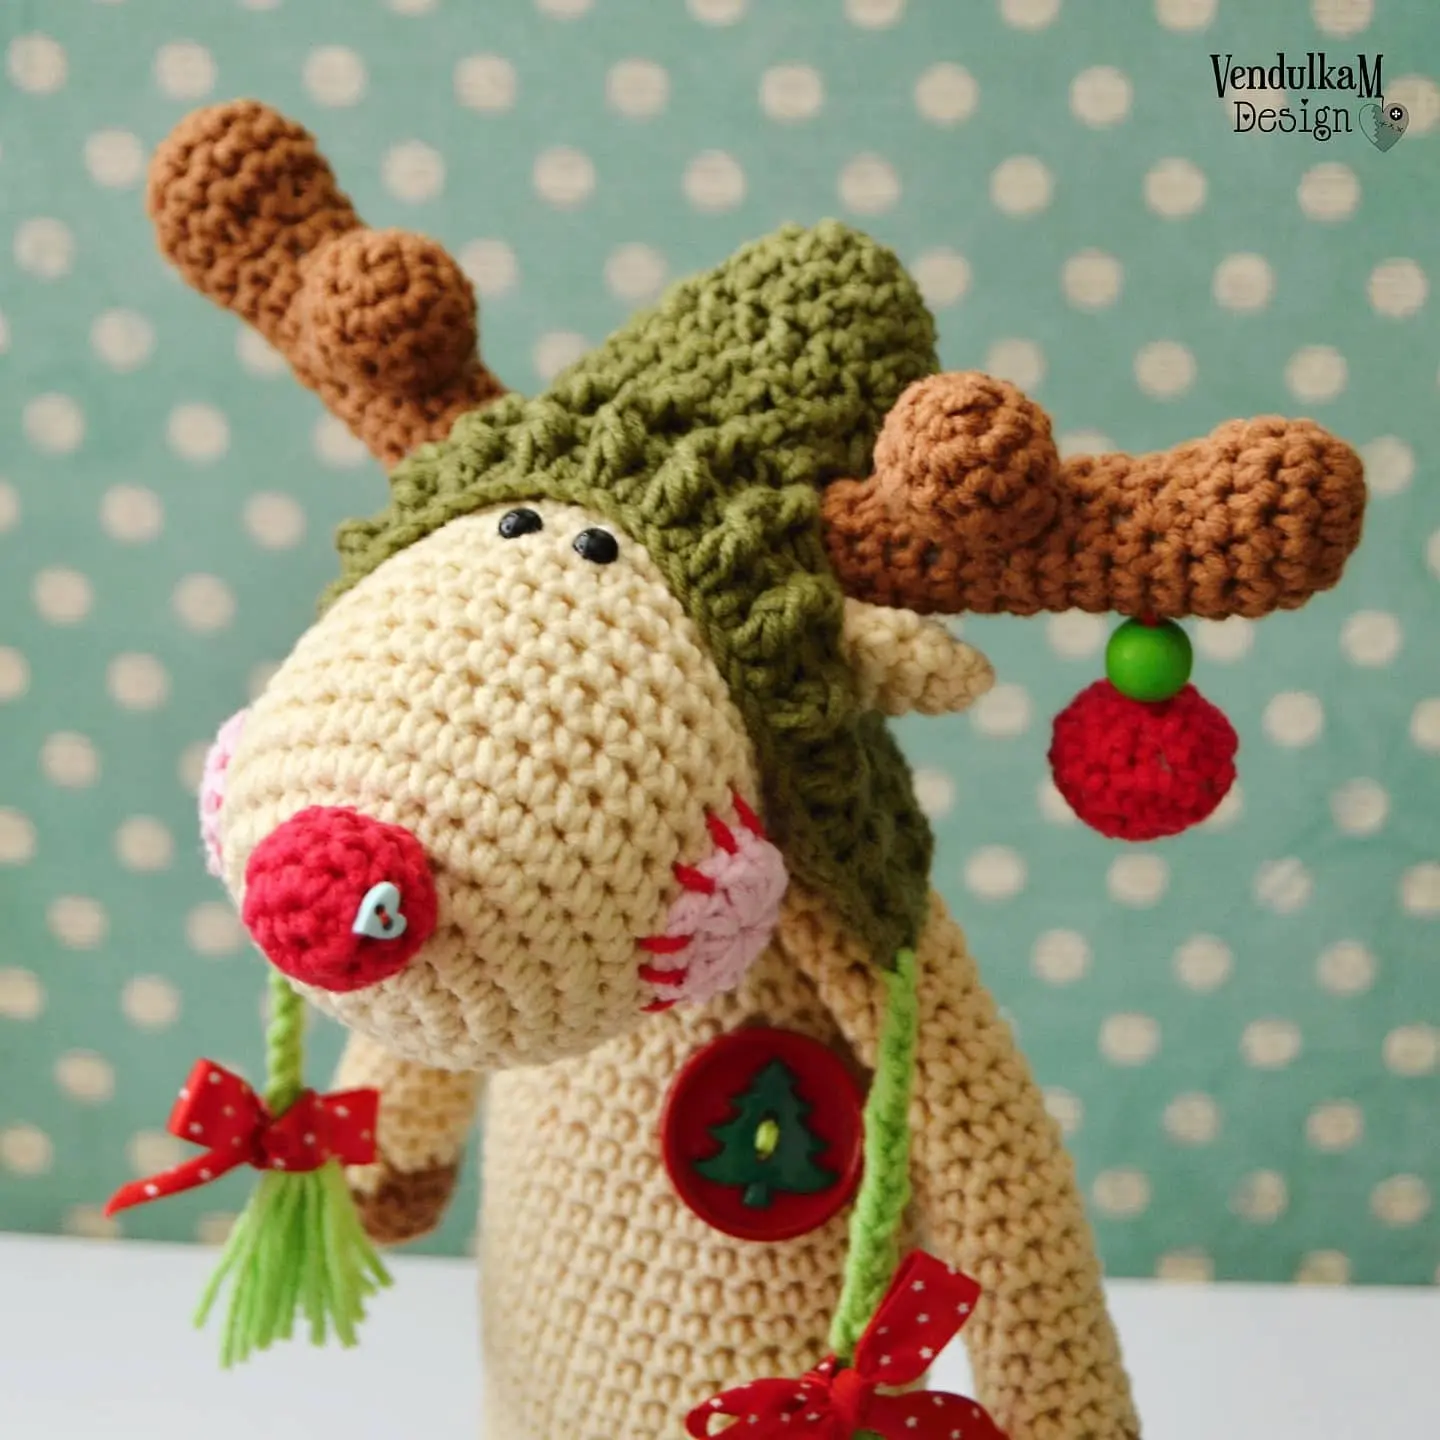 Crochet toys by Vendulka Maderska